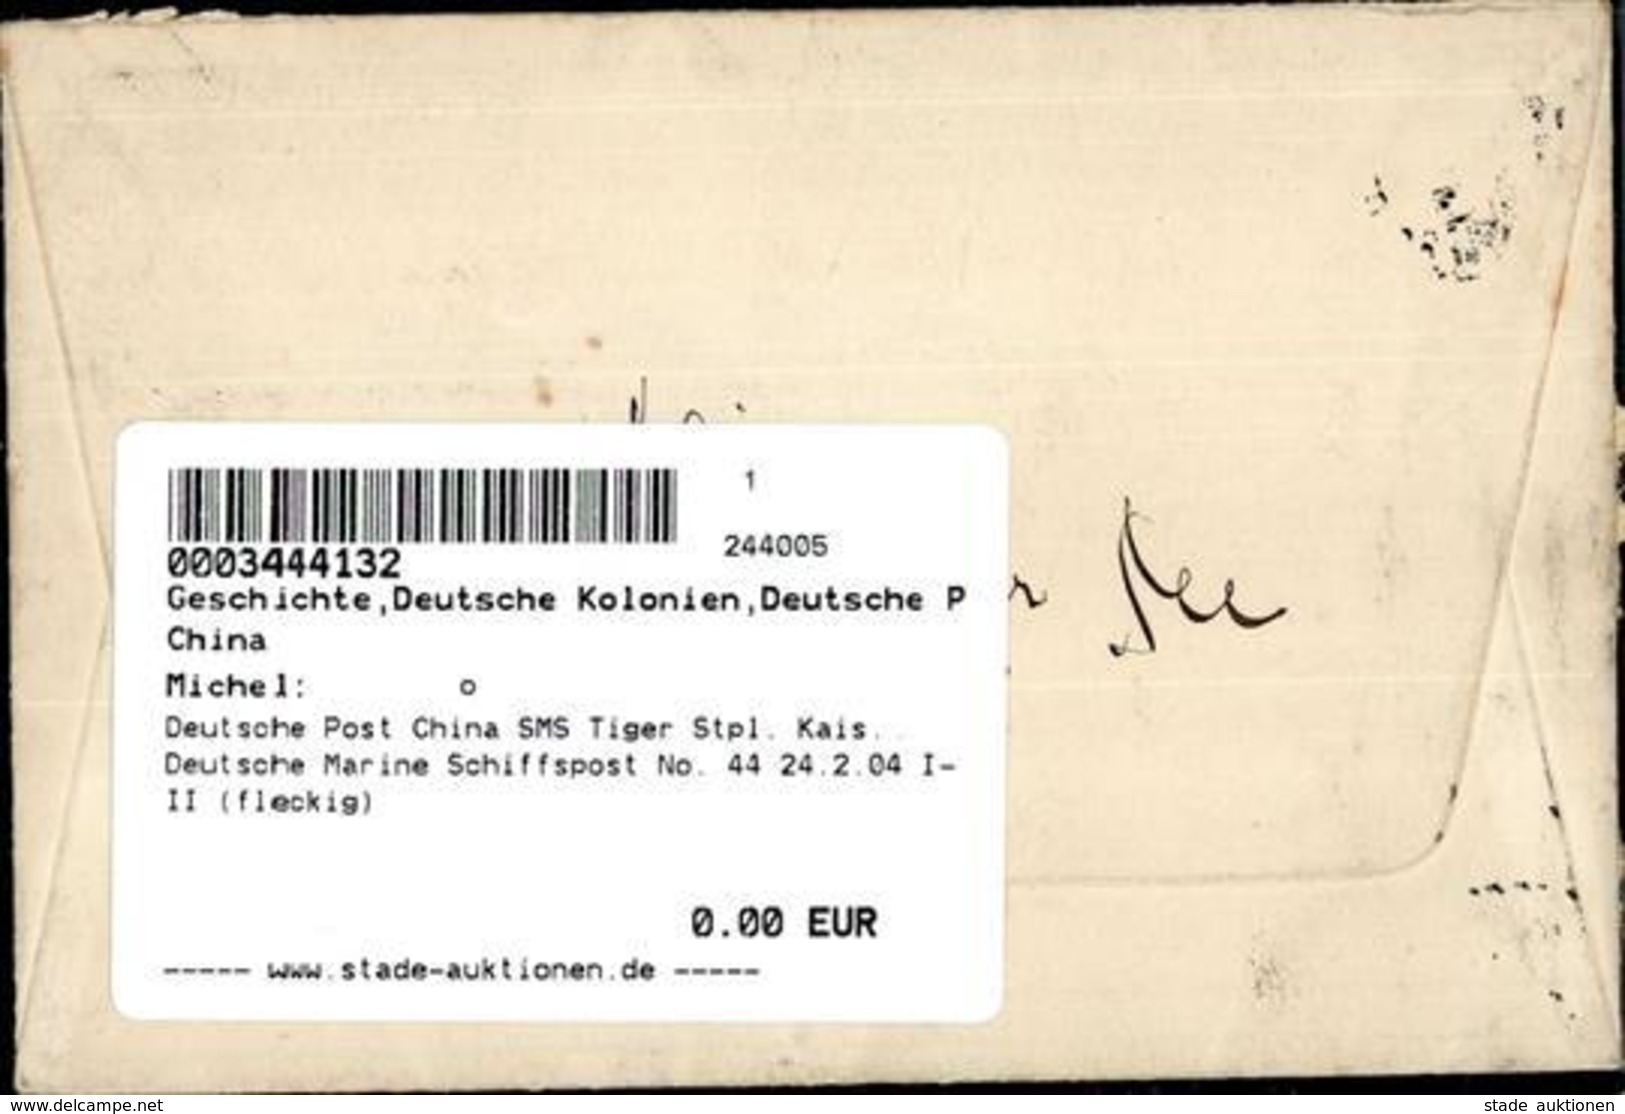 Deutsche Post China SMS Tiger Stpl. Kais. Deutsche Marine Schiffspost No. 44 24.2.04 I-II (fleckig) - Unclassified